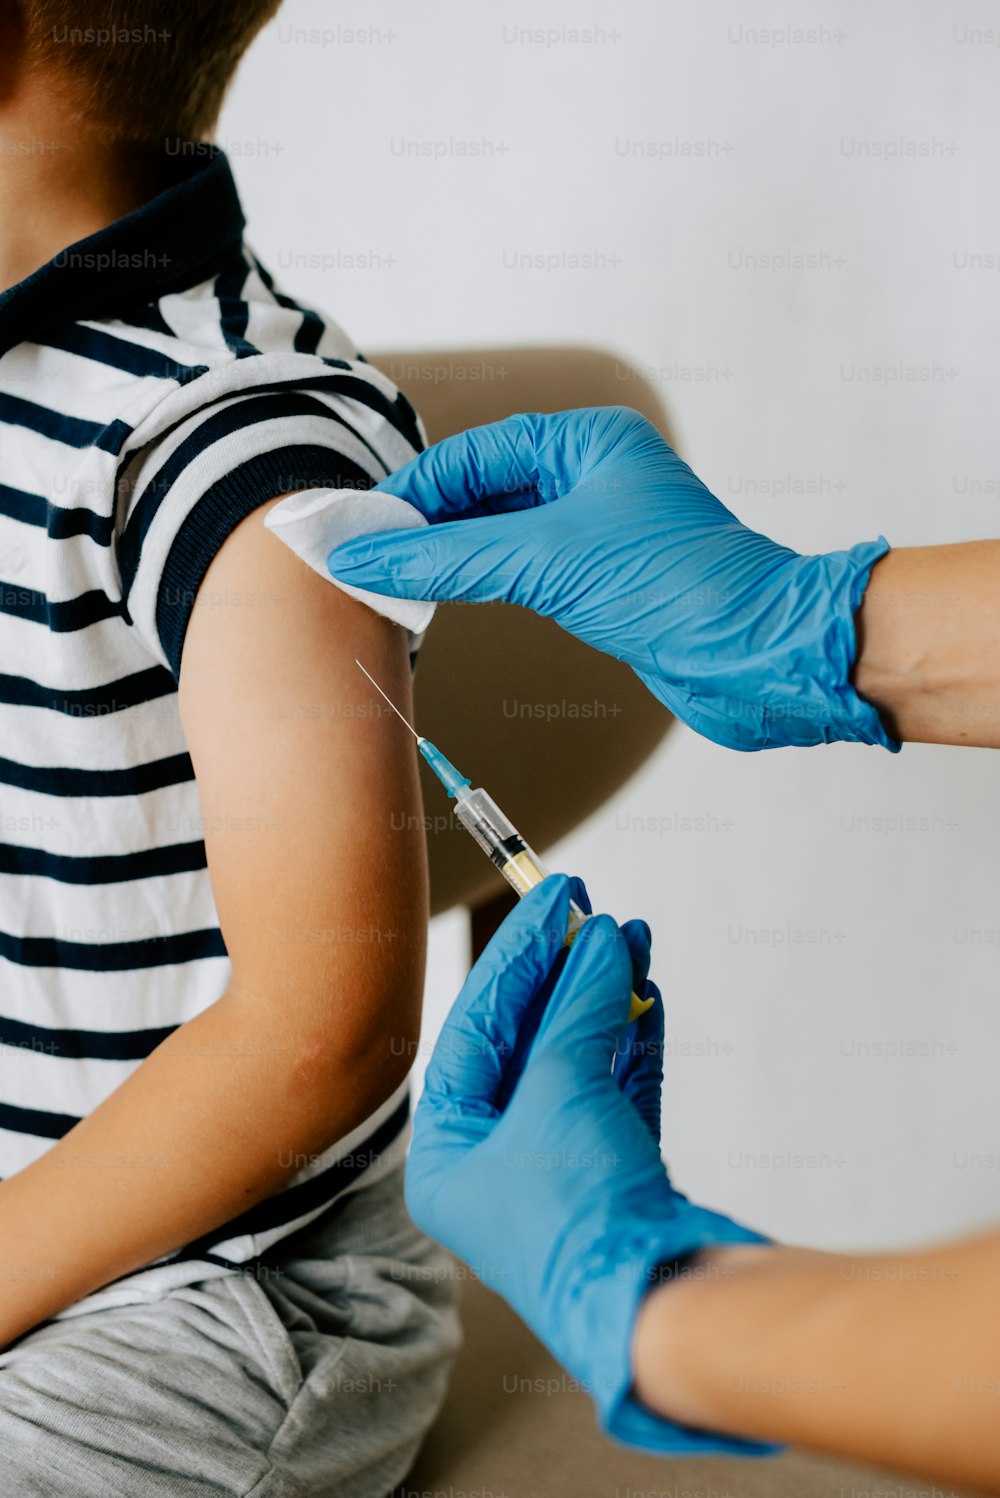 Un niño recibiendo un vaccium vaccium vaccium vaccium